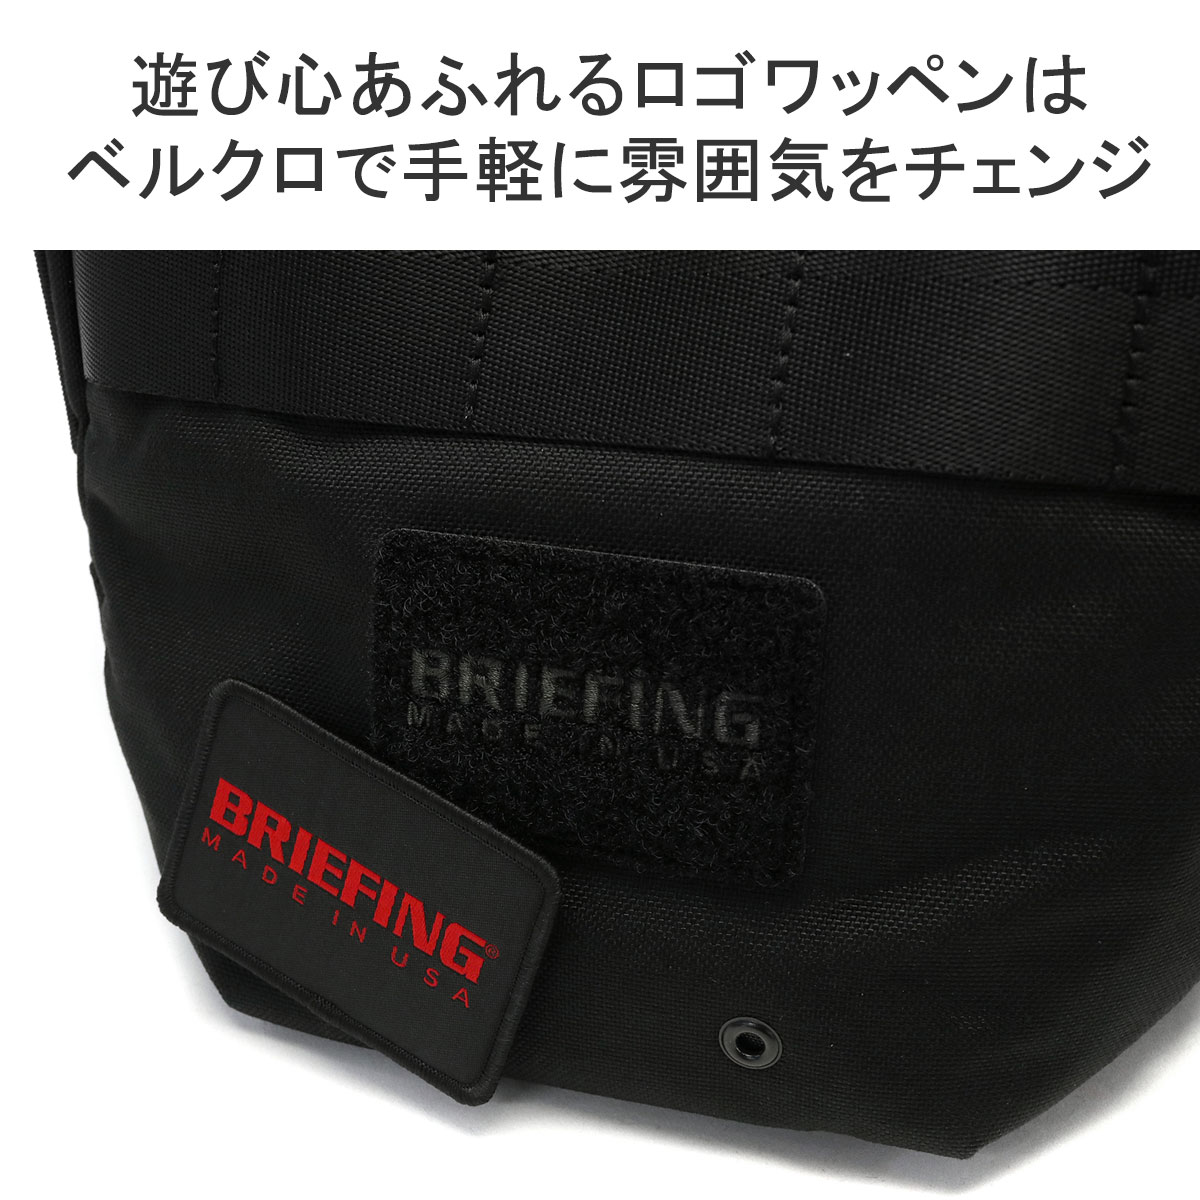 日本正規品 ブリーフィング ショルダーバッグ BRIEFING MADE IN 